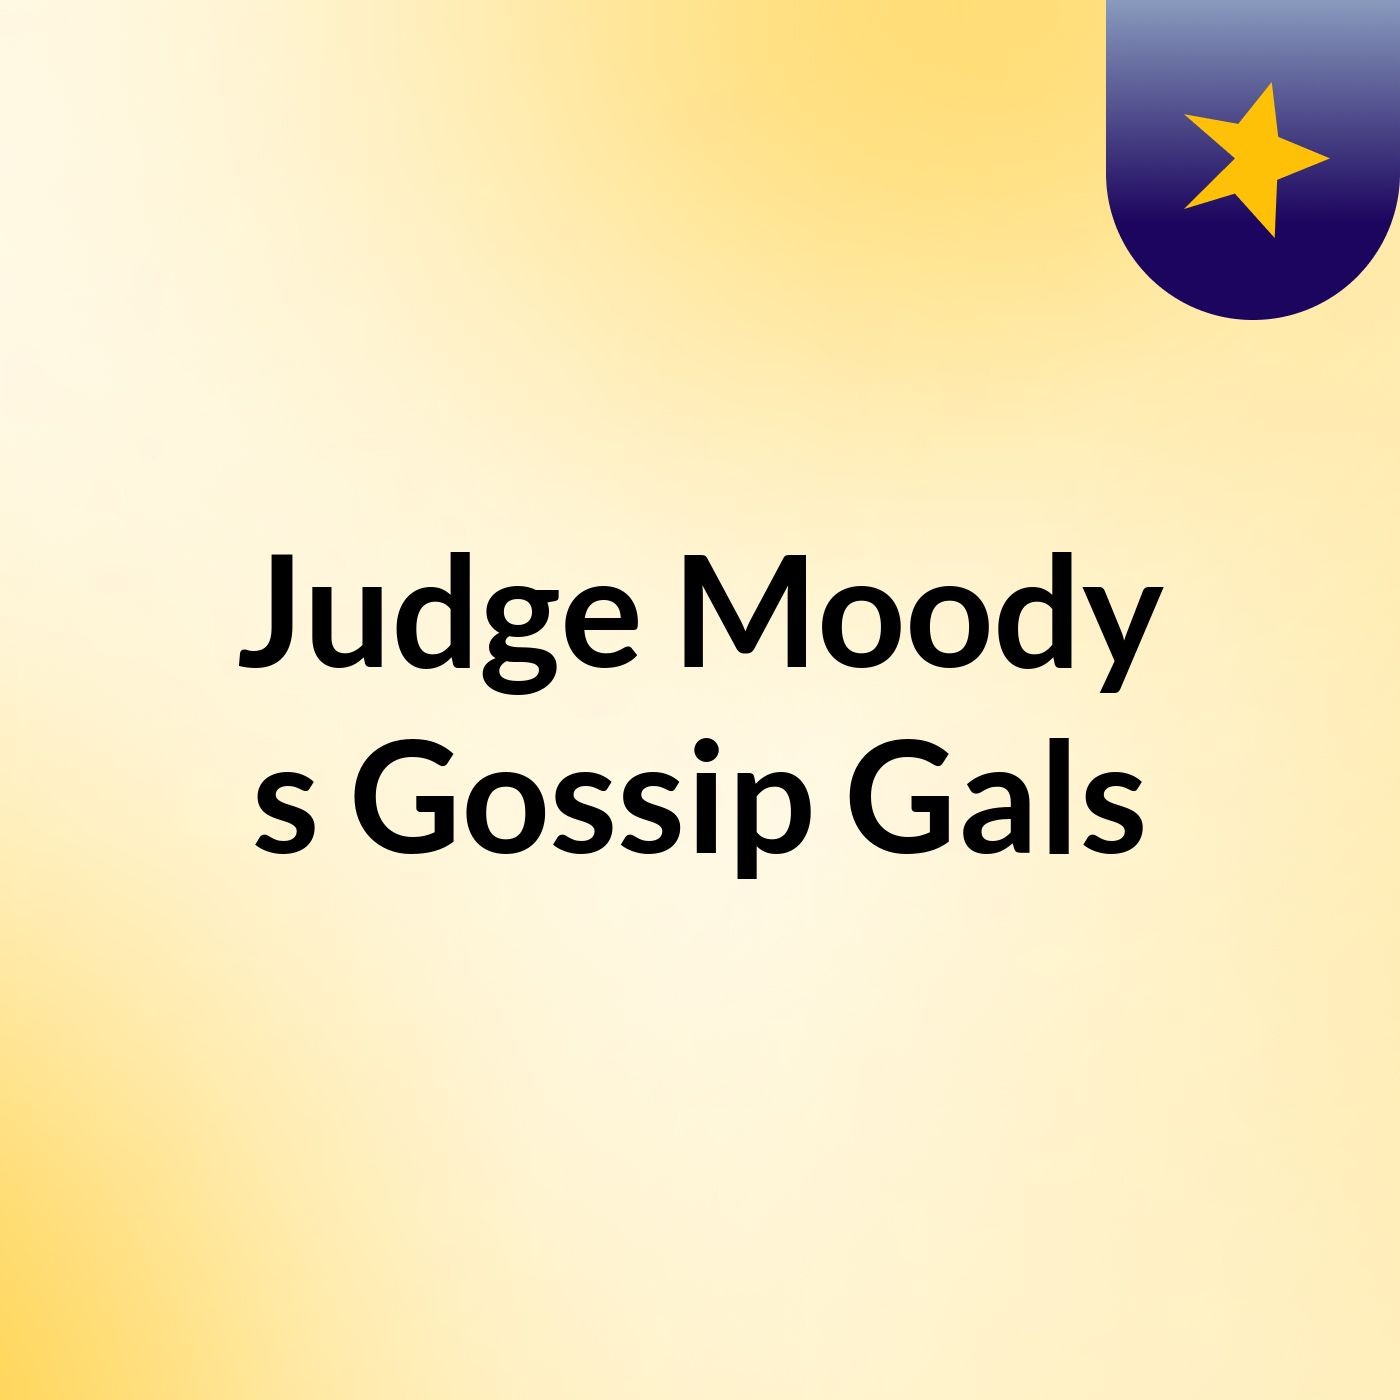 Episode 1 - Judge Moody's Gossip Gals